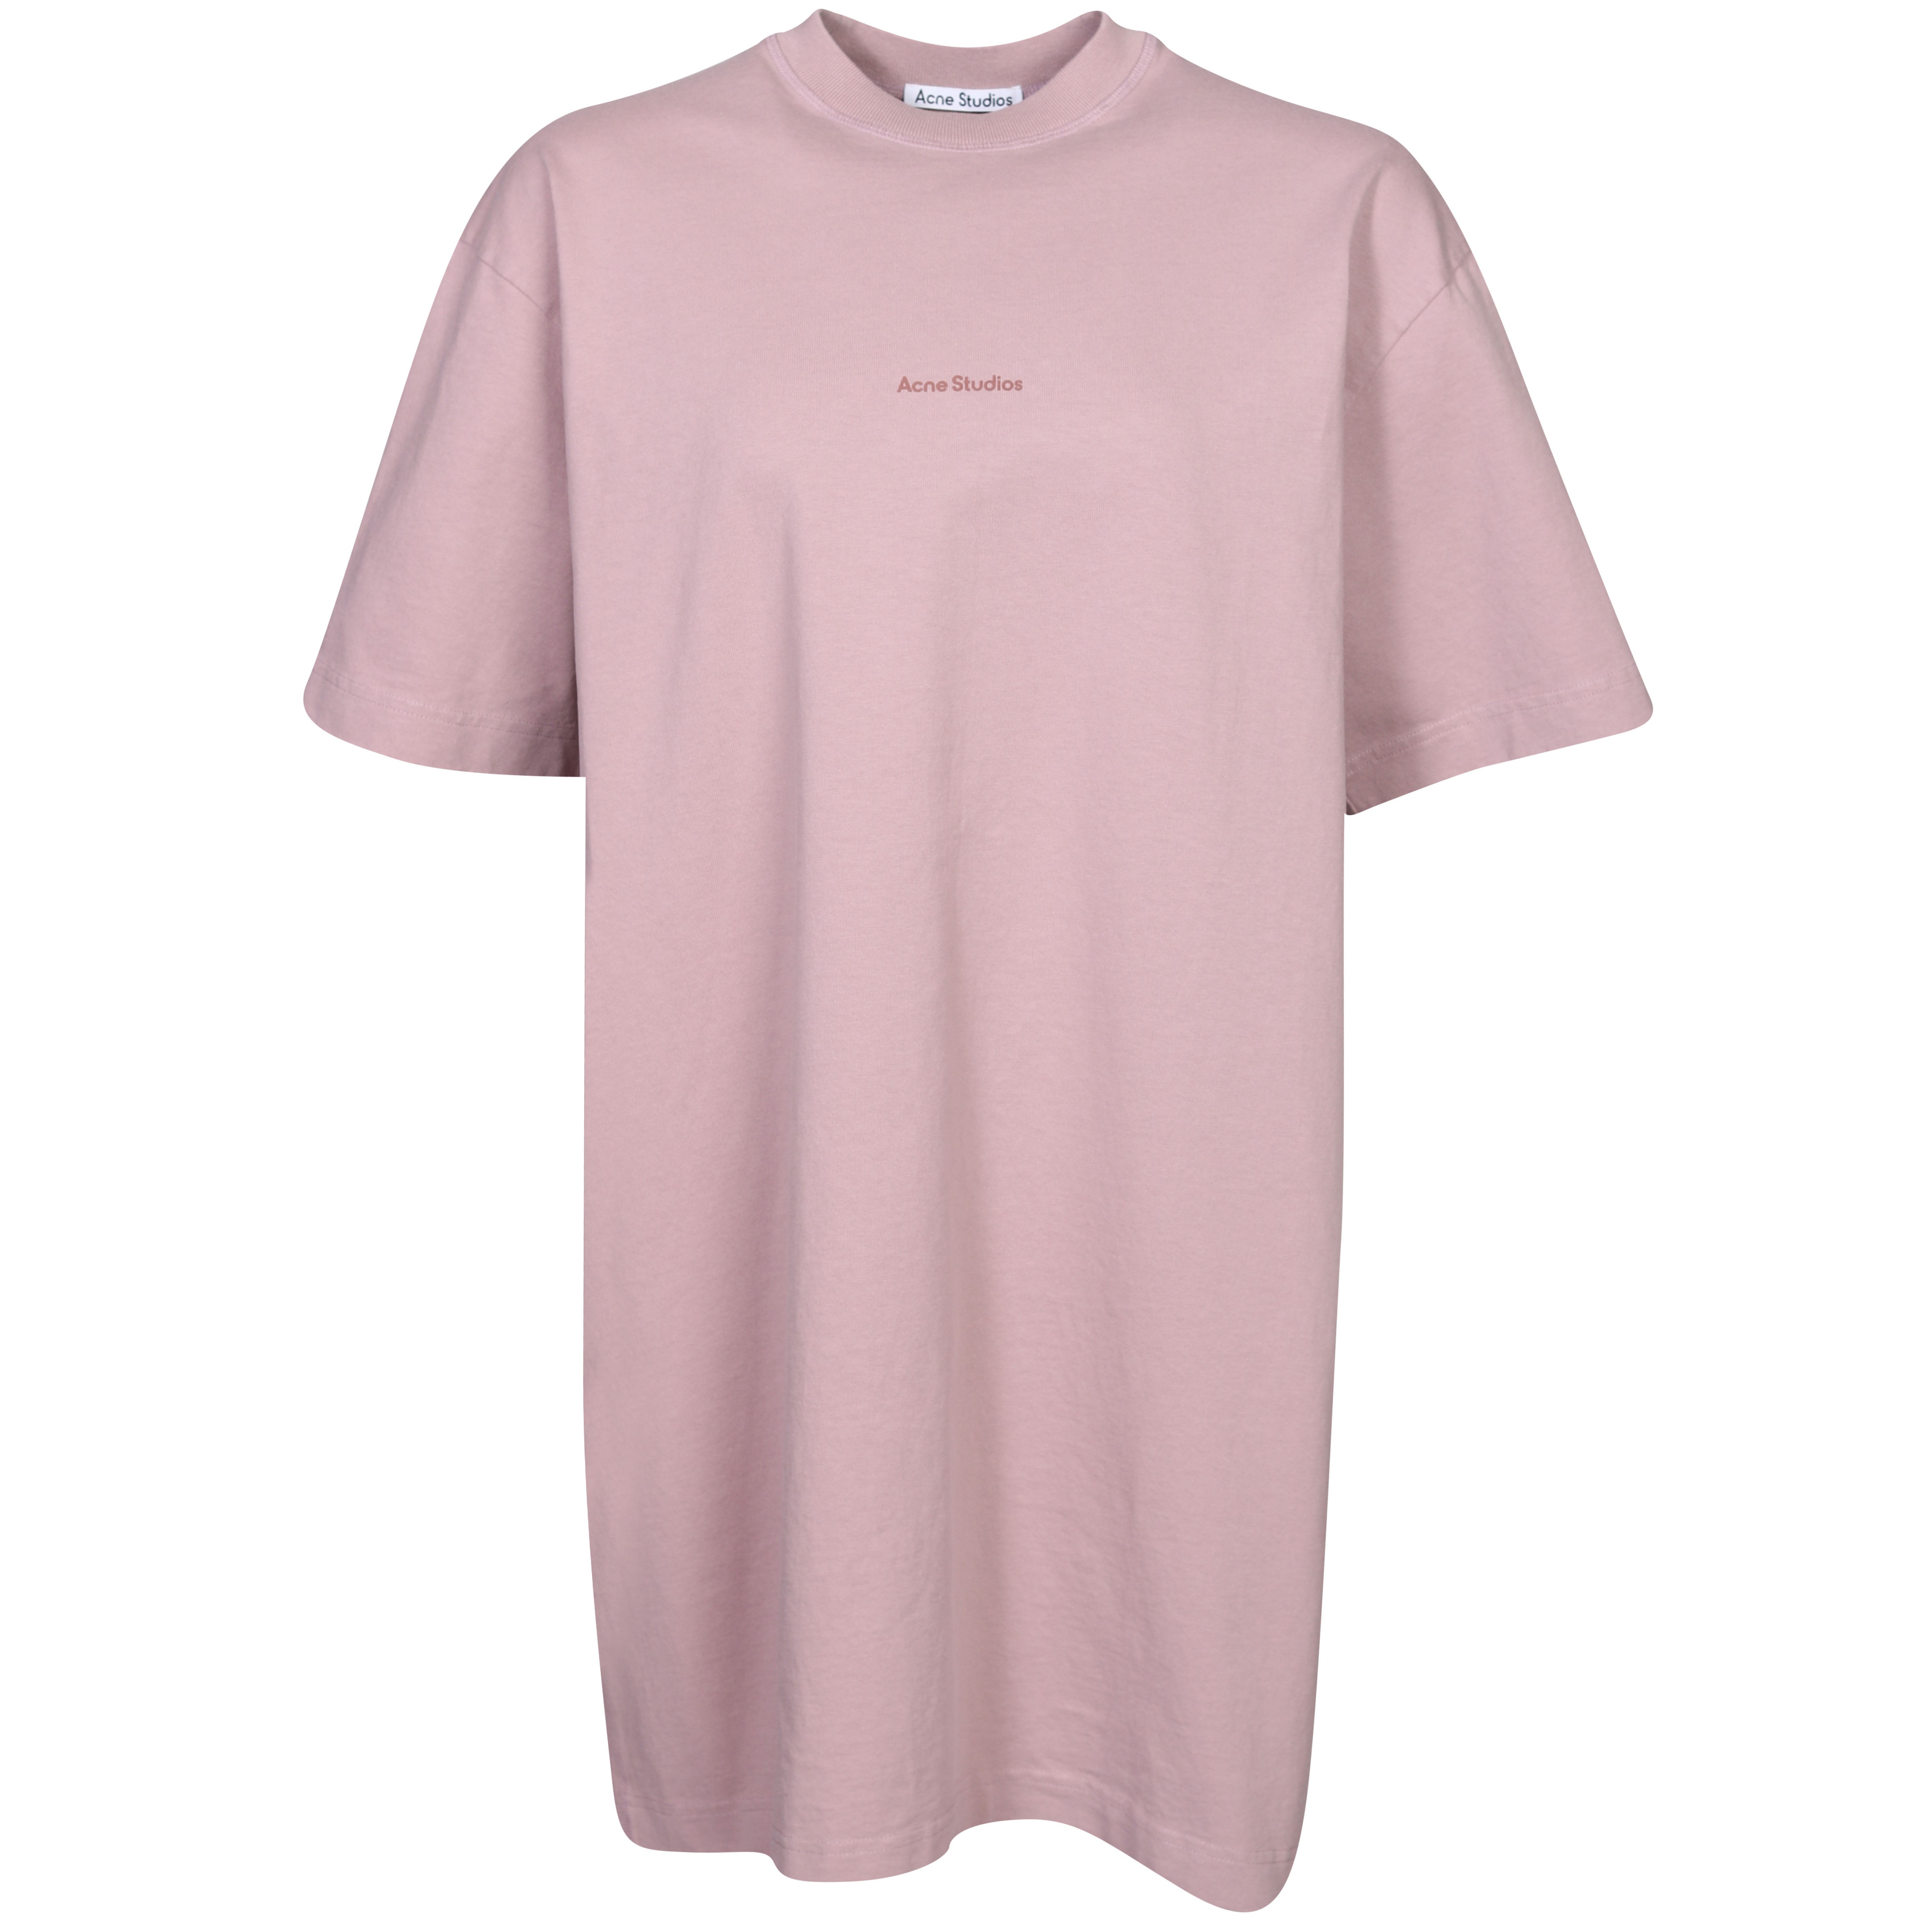 Acne Studios Cotton T-Shirt Dress in Mauve Pink M